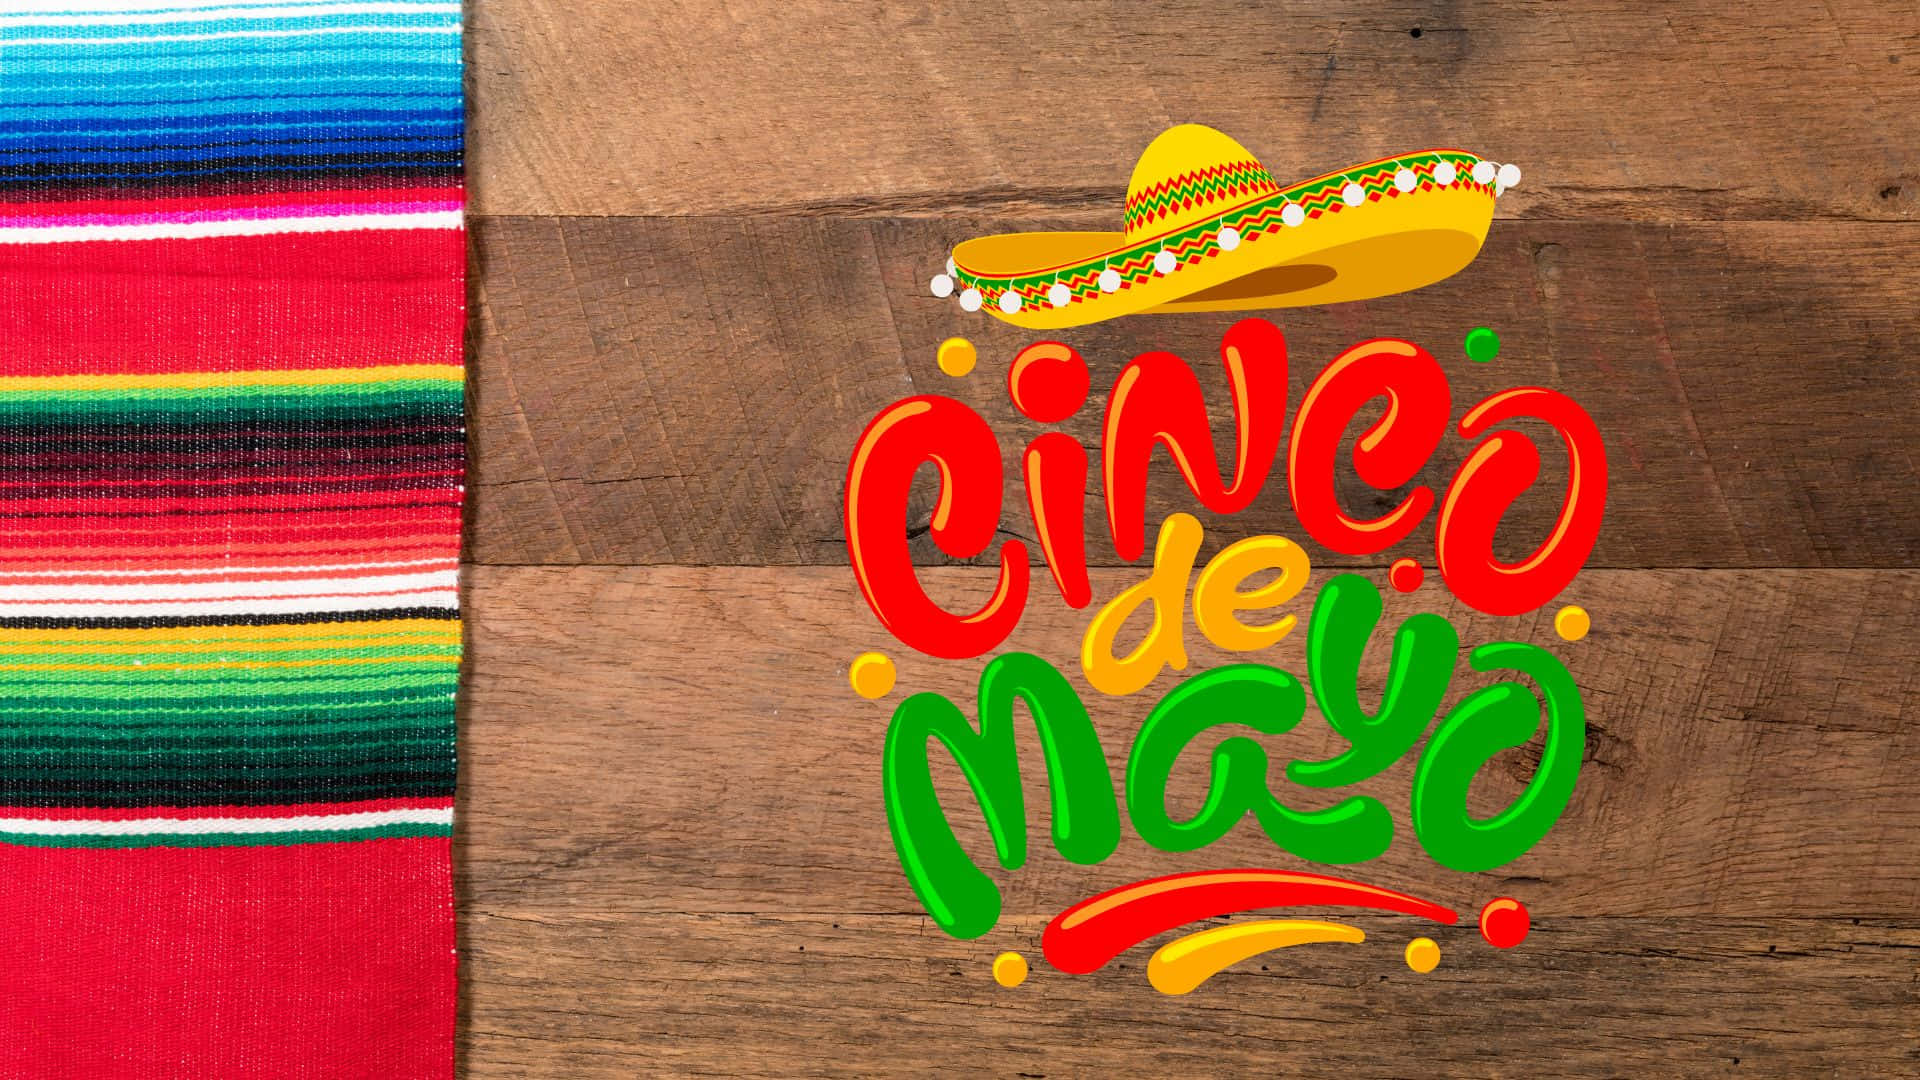 Einmexikanischer Hut Und Eine Mexikanische Decke Auf Einem Holztisch Wallpaper